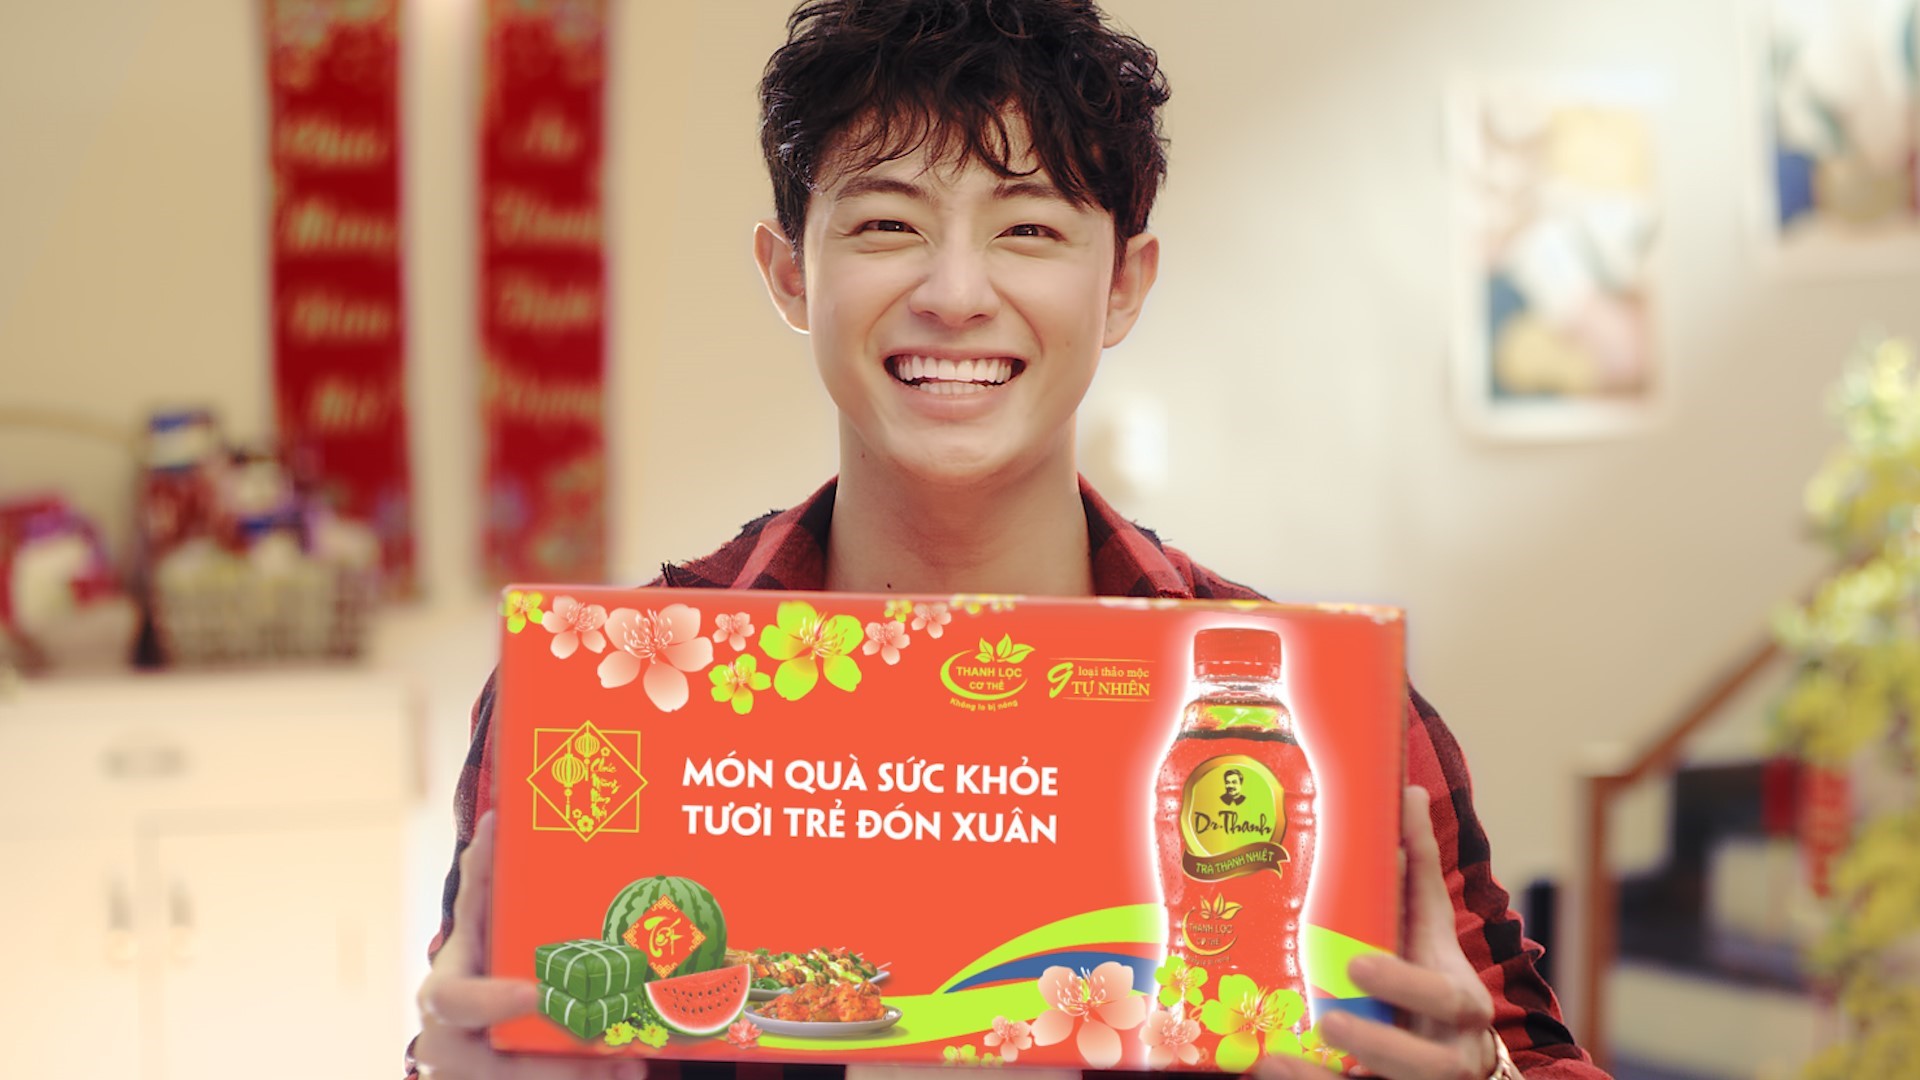 “Món quà sức khỏe” mà Trà Thanh nhiệt Dr Thanh gửi đến thế hệ Z đang thu hút lượng xem nhiều nhất trong các clip quảng cáo Tết.